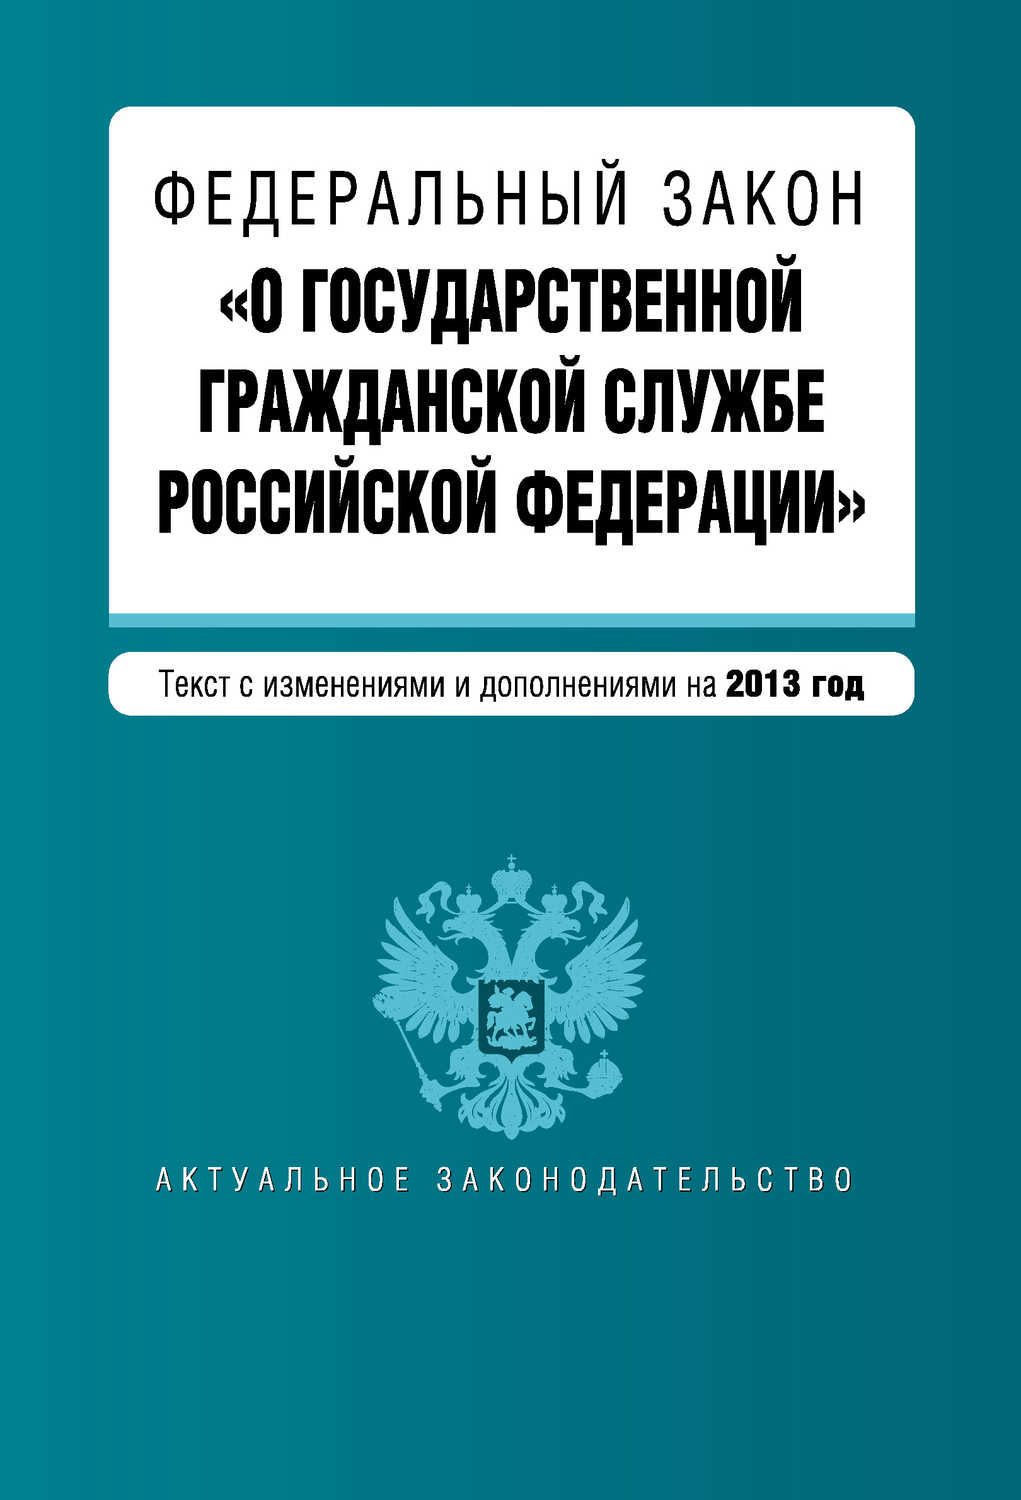 Федеральный закон «О государственной гражданской службе Российской Федерации». Текст с изменениями и дополнениями на 2013 год